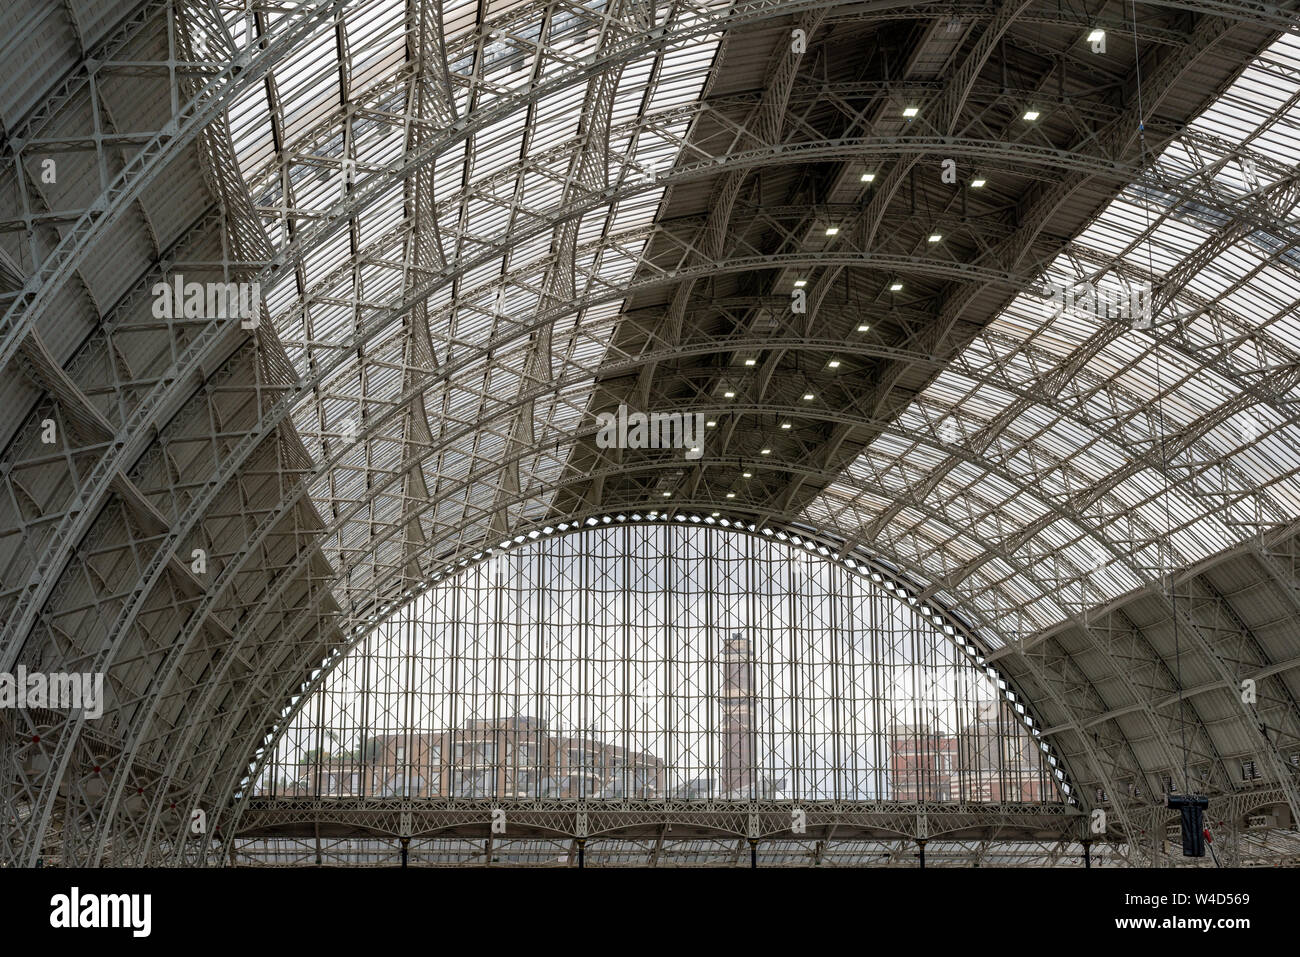 Die gewölbte Glas und Gusseisen Dachkonstruktion des Olympia Exhibition Centre in Kensington, London, Vereinigtes Königreich Stockfoto